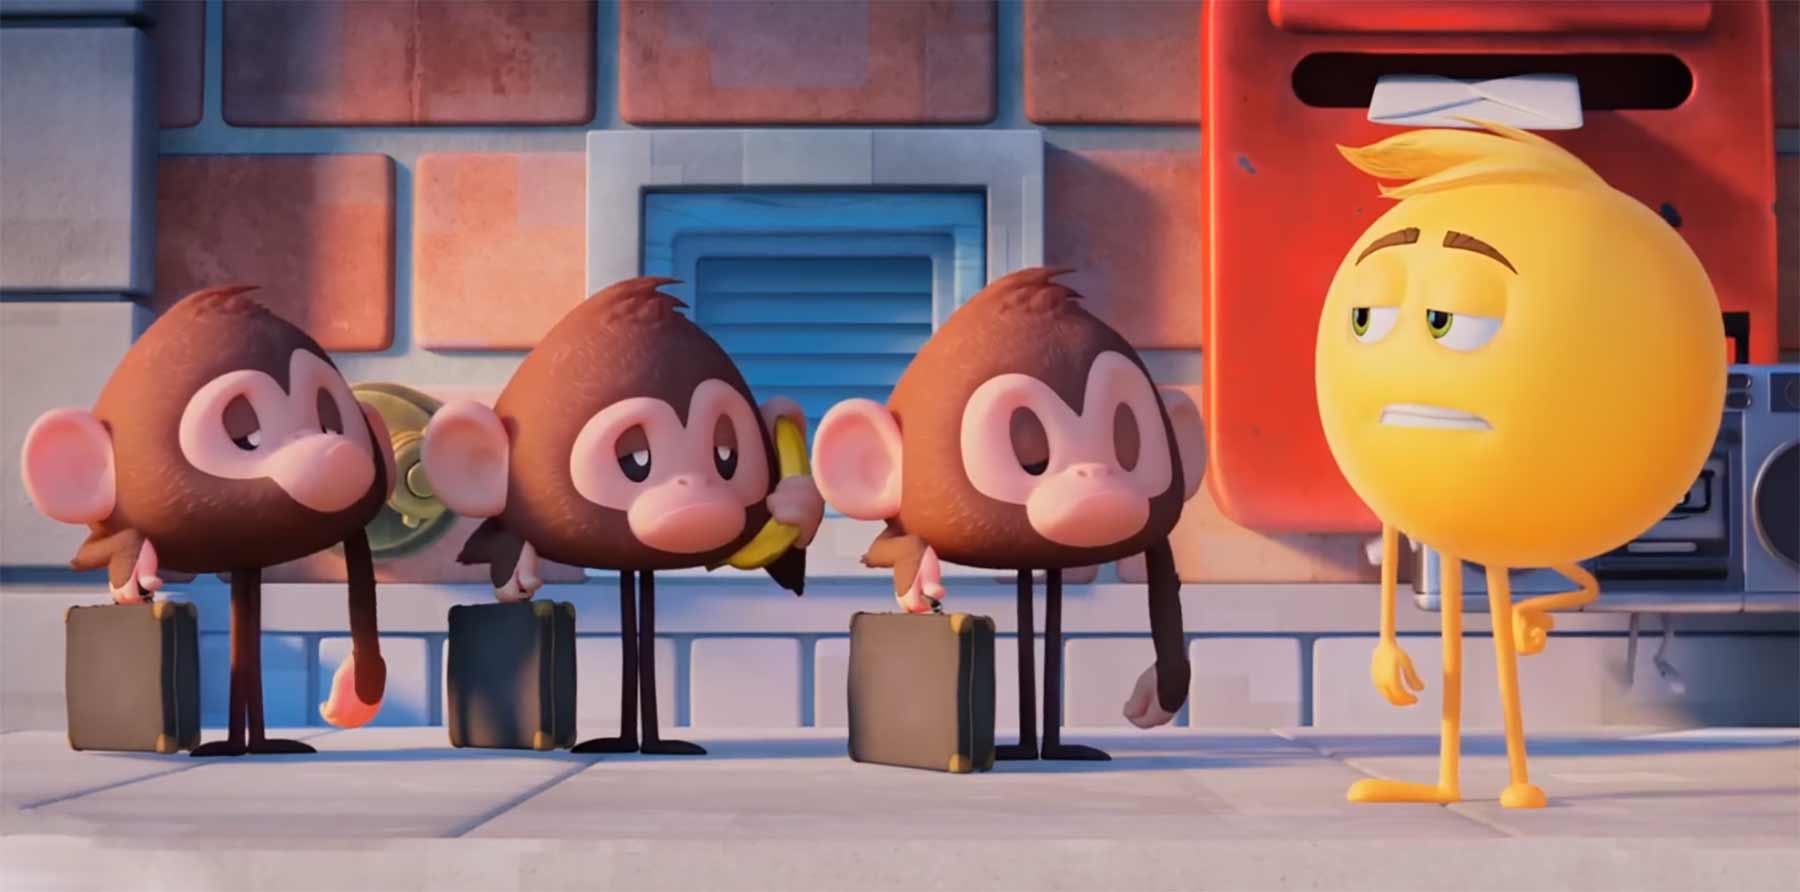 Honest Trailers - The Emoji Movie honest-trailer-the-emoji-movie 